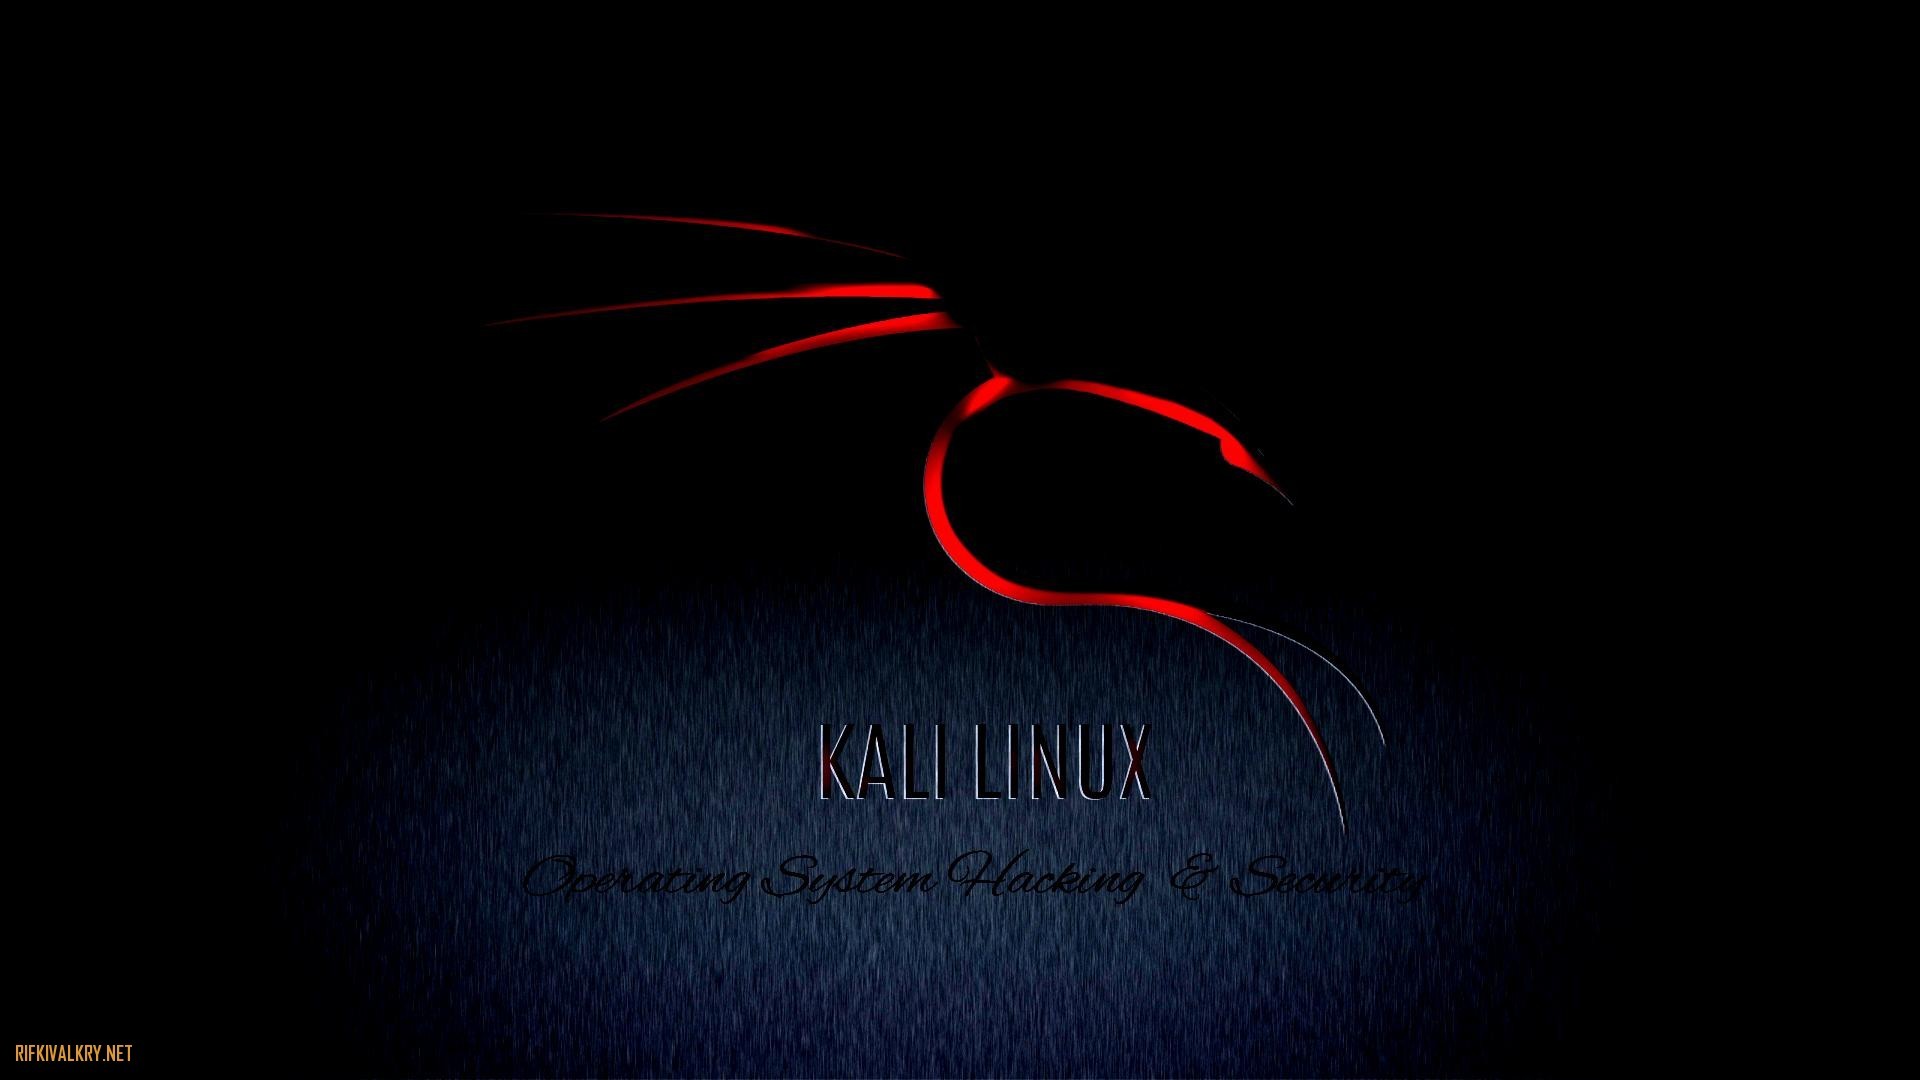 1920x1080, Github - Kali Linux Wallpaper 4k Download - HD Wallpaper 